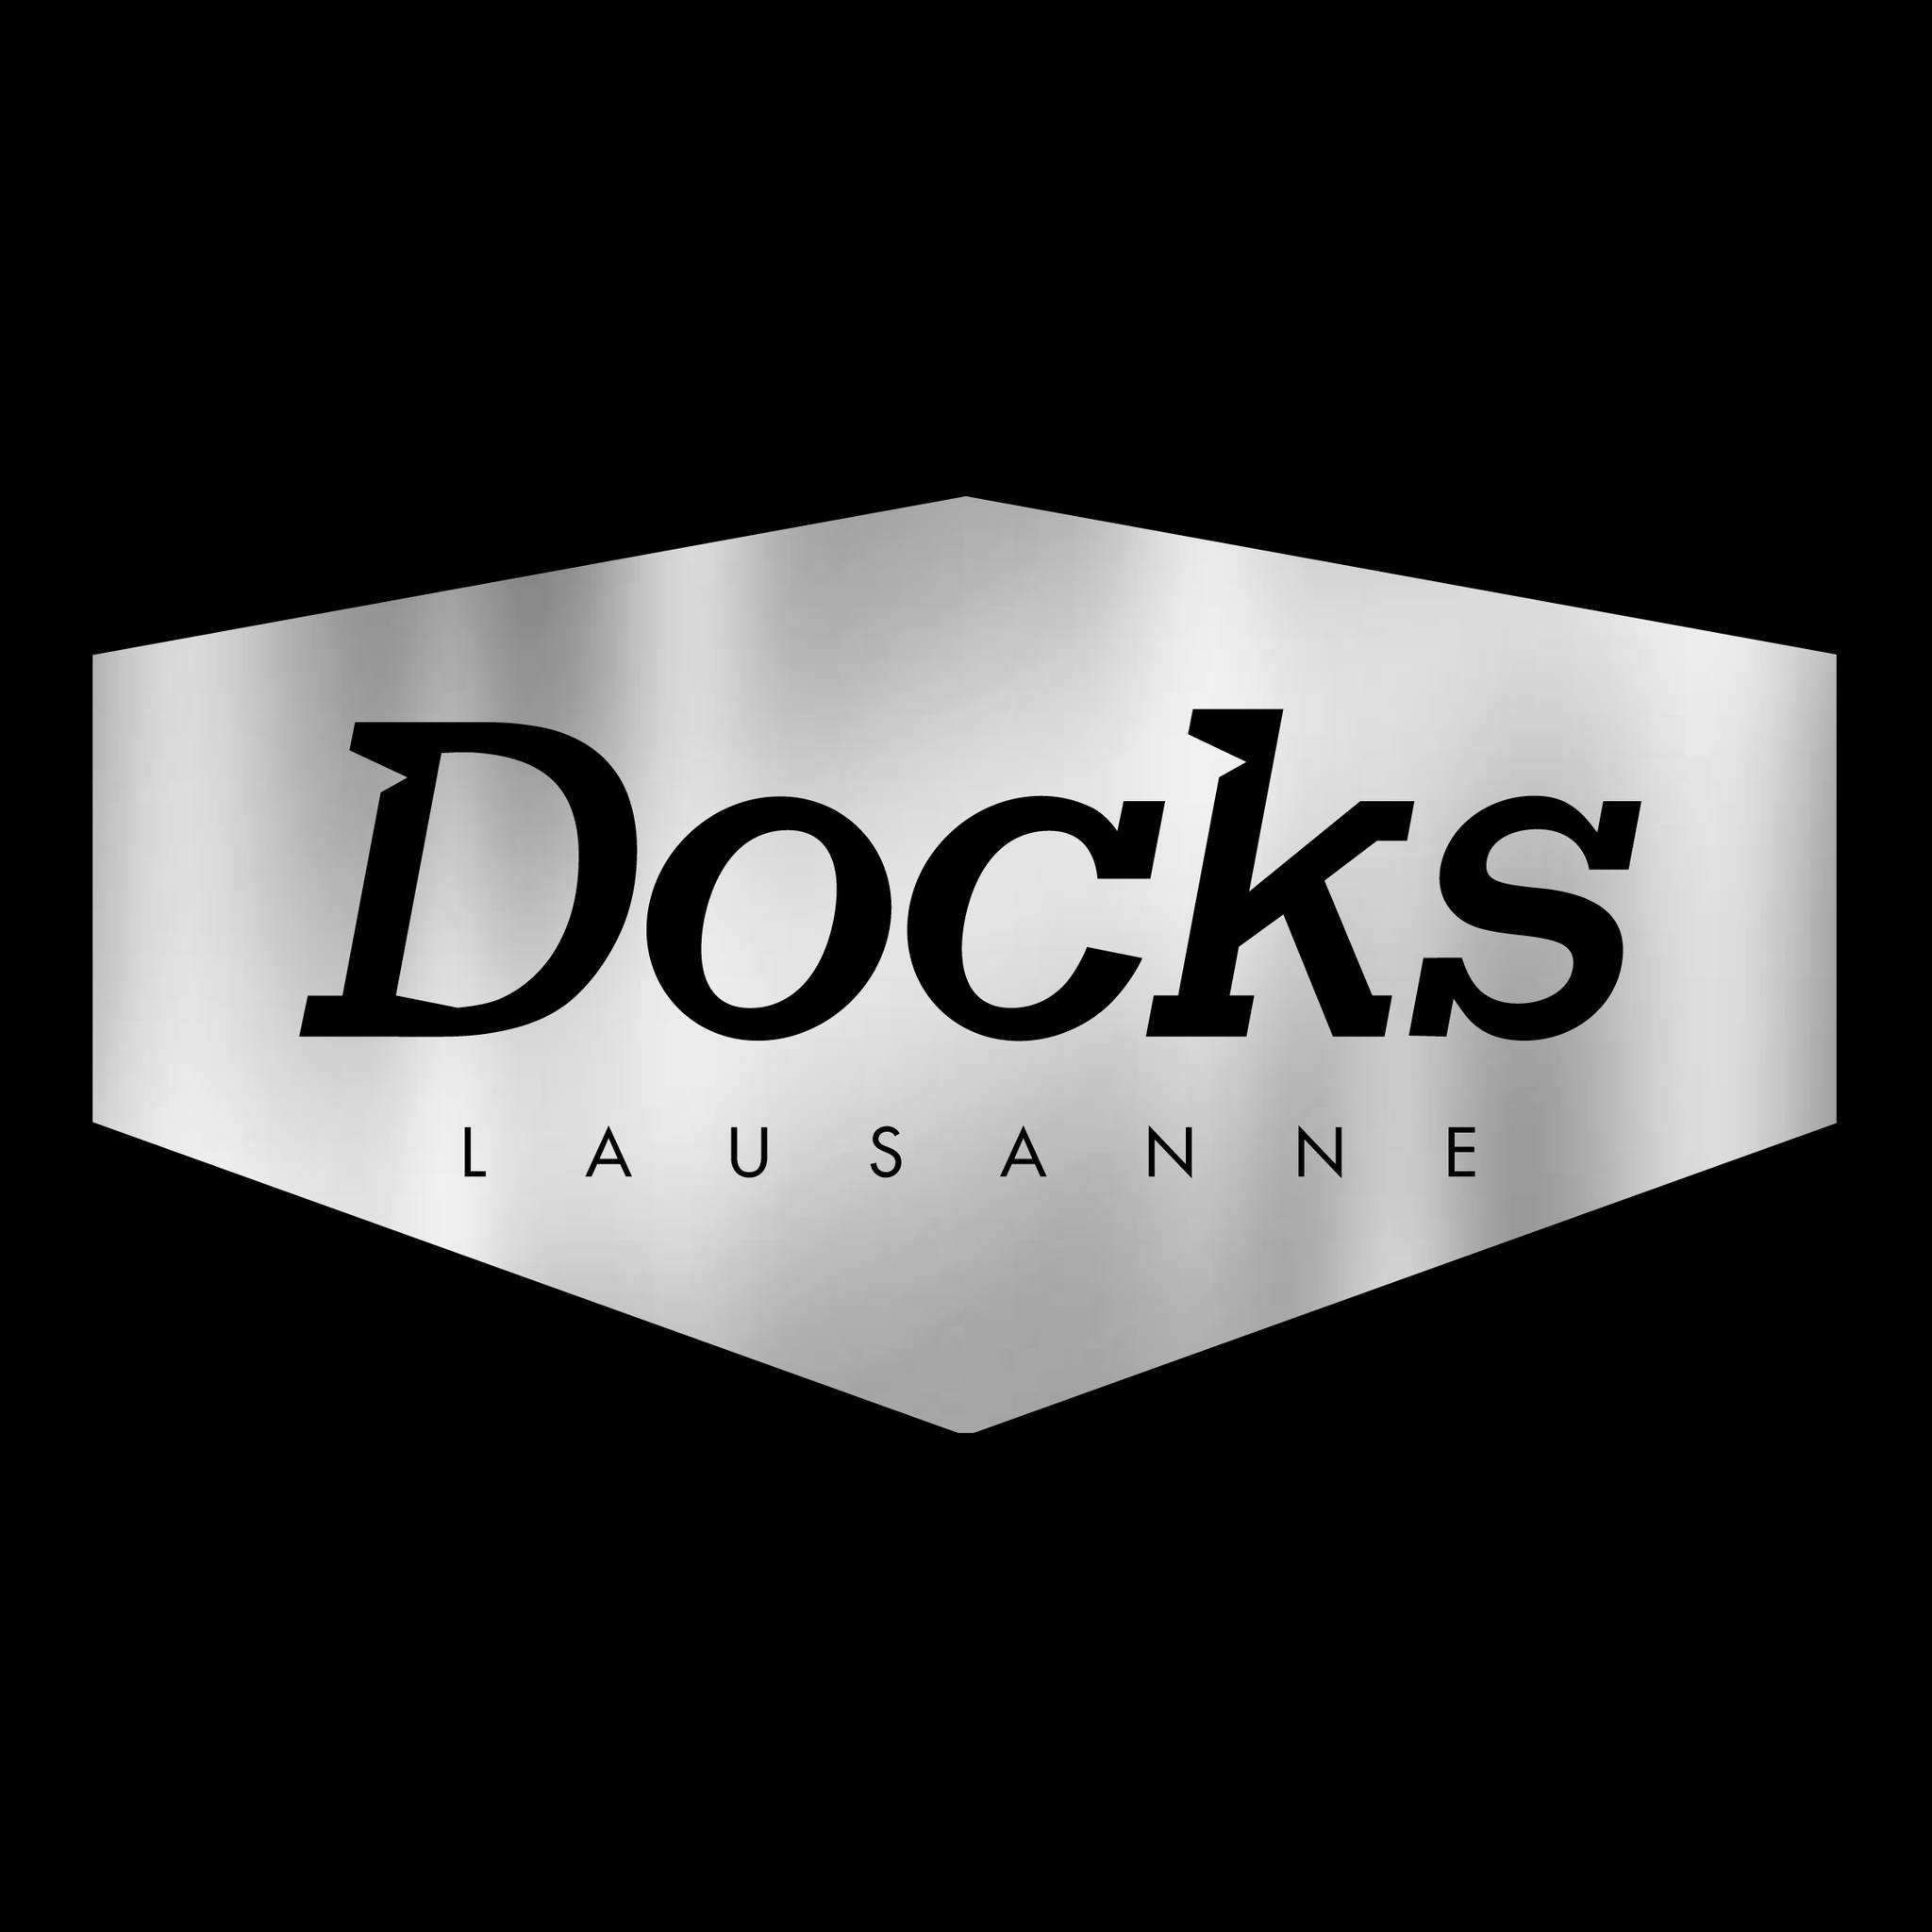 Billets Rendez Vous - Ultra Sunn (Les Docks Lausanne - Lausanne)